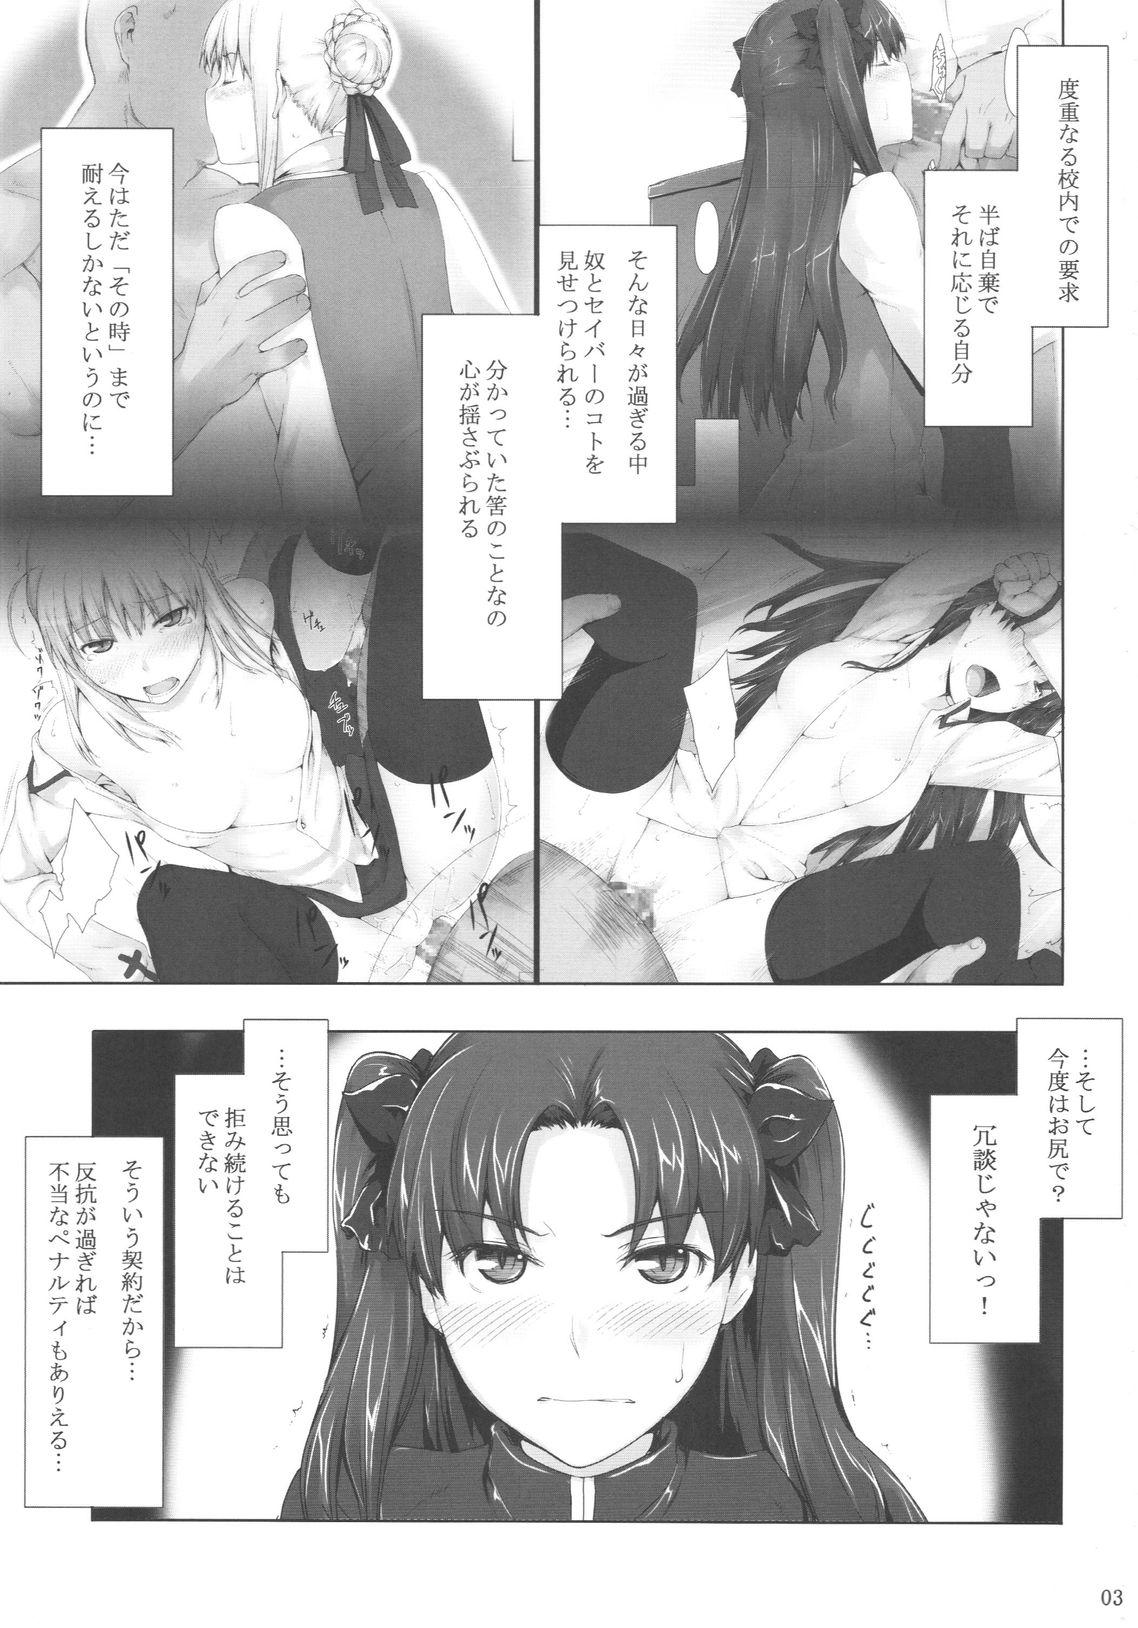 Family Taboo Tohsaka-ke no Kakei Jijou 5 - Fate stay night Strip - Page 2